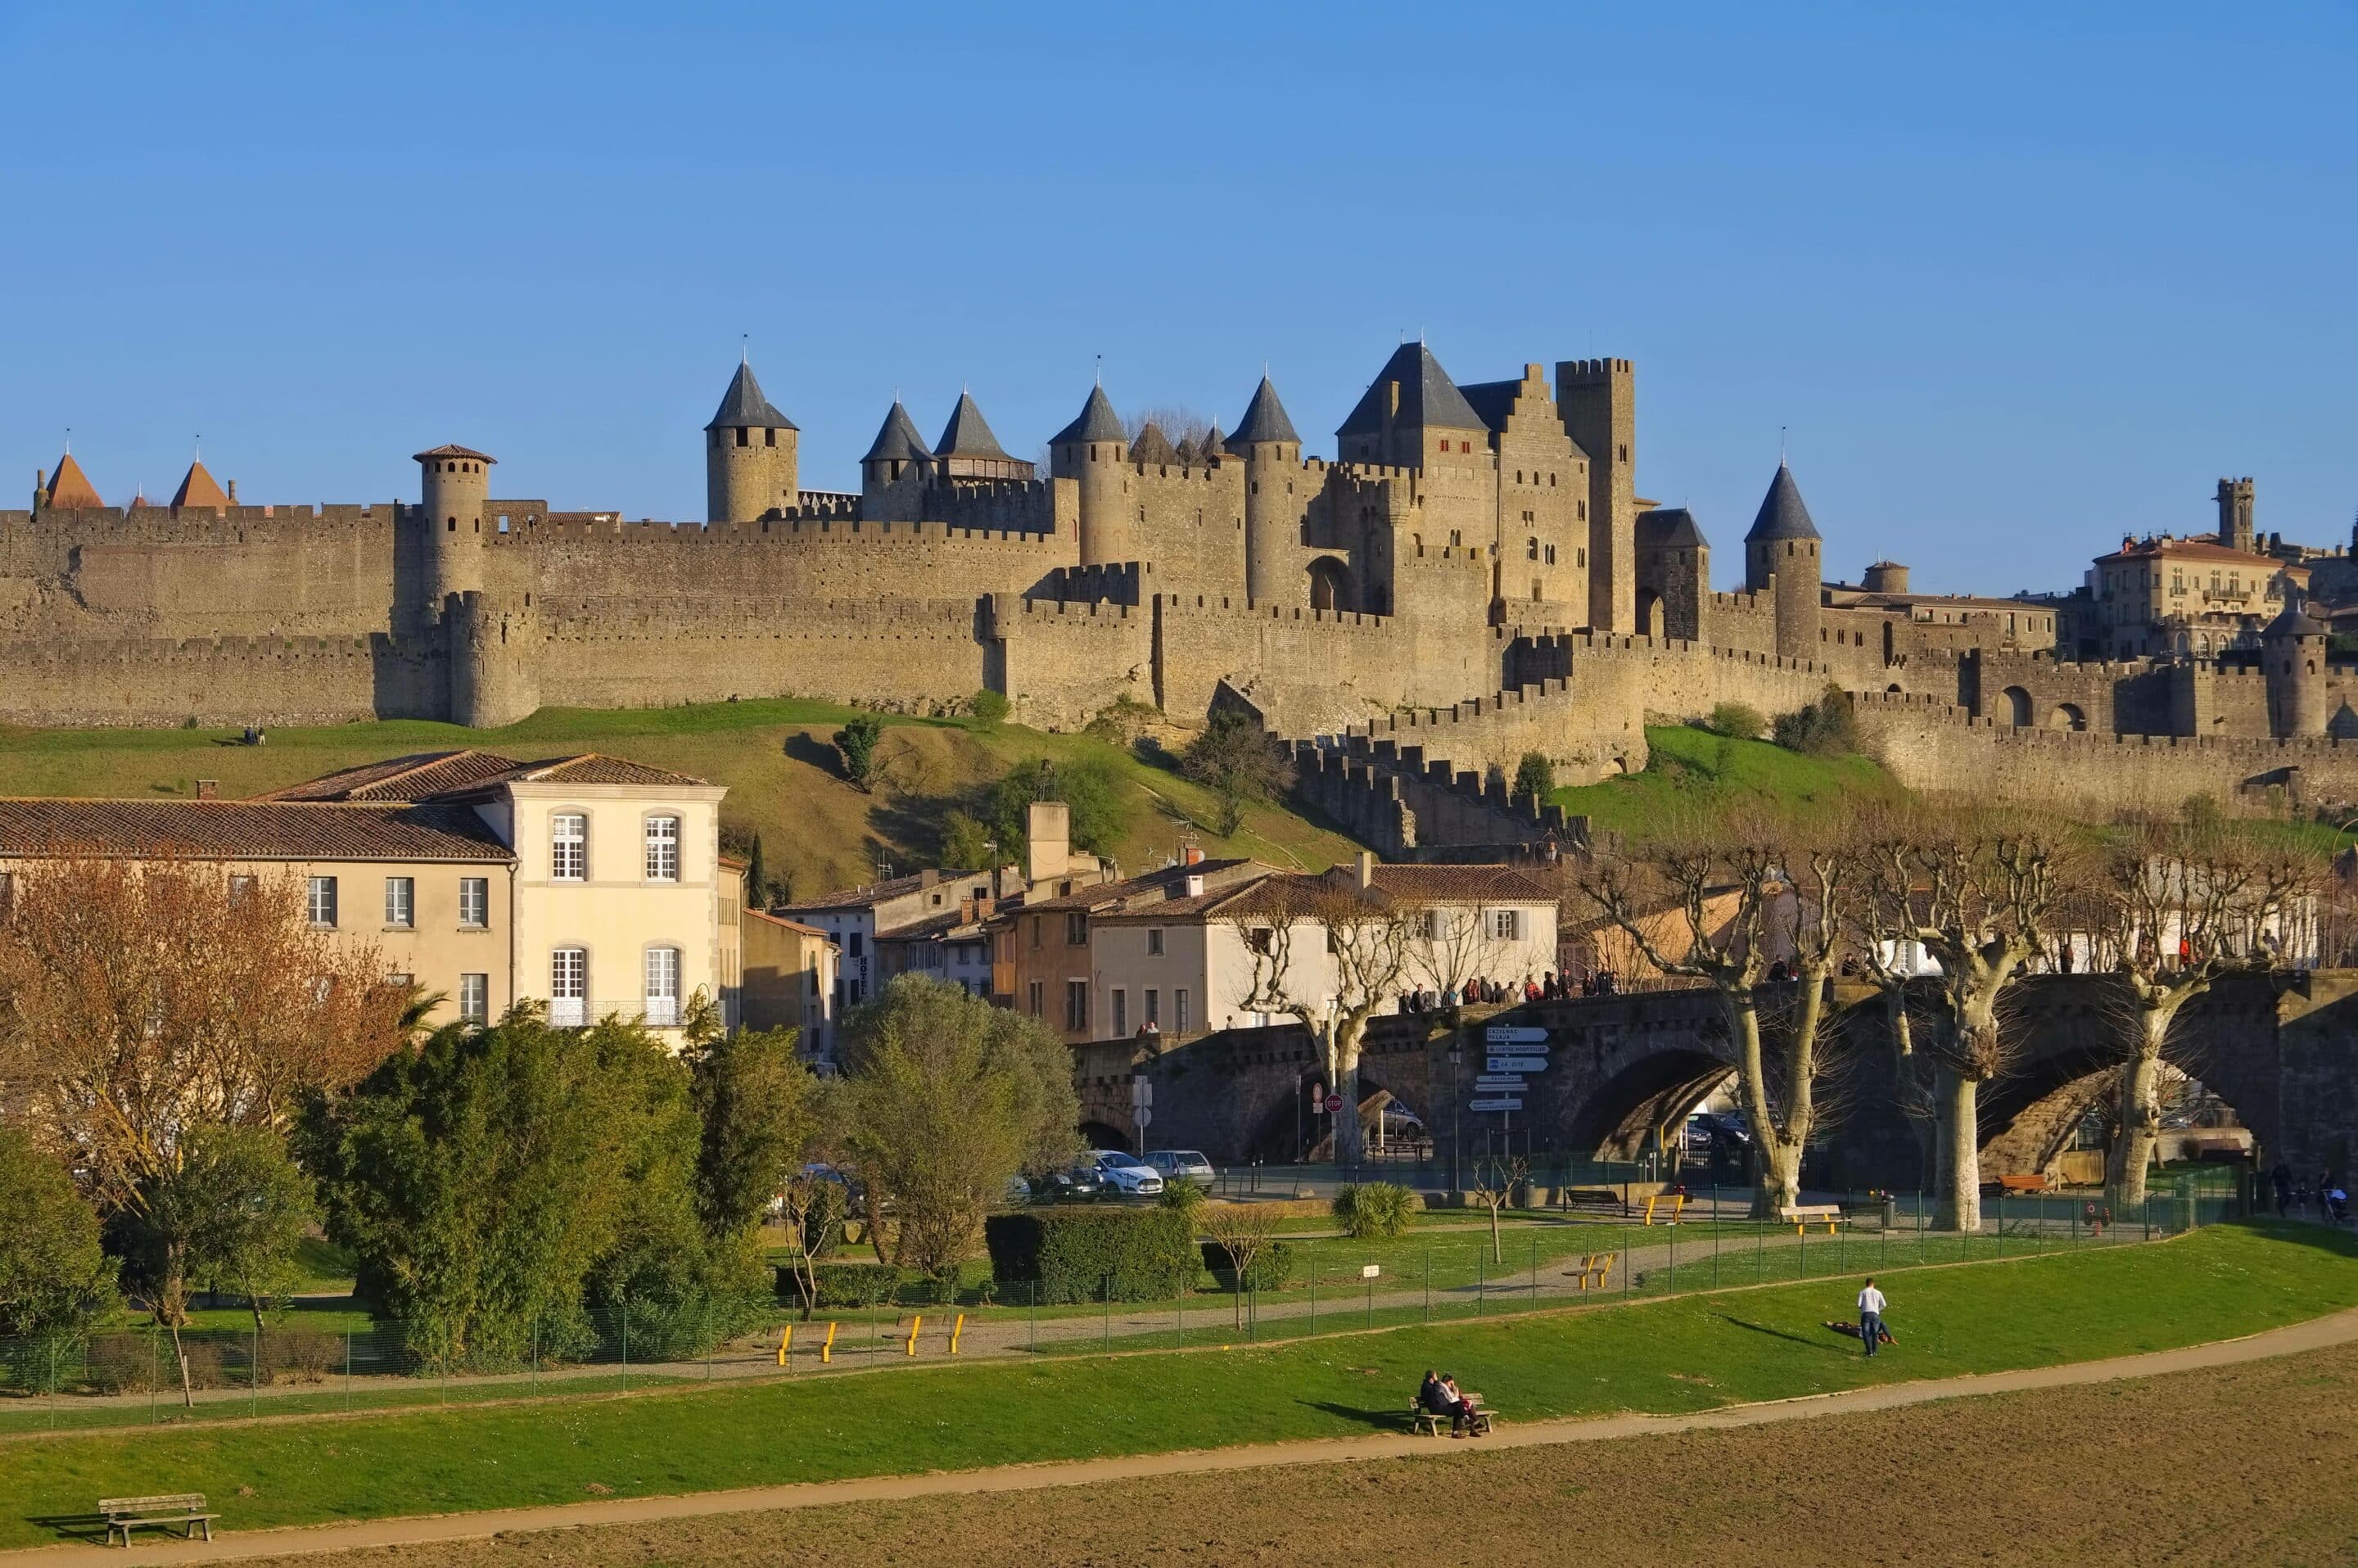 Carcassonne Pont Vieux, imageBROKER.com/Liane Matrisch/SIPA/2402201547